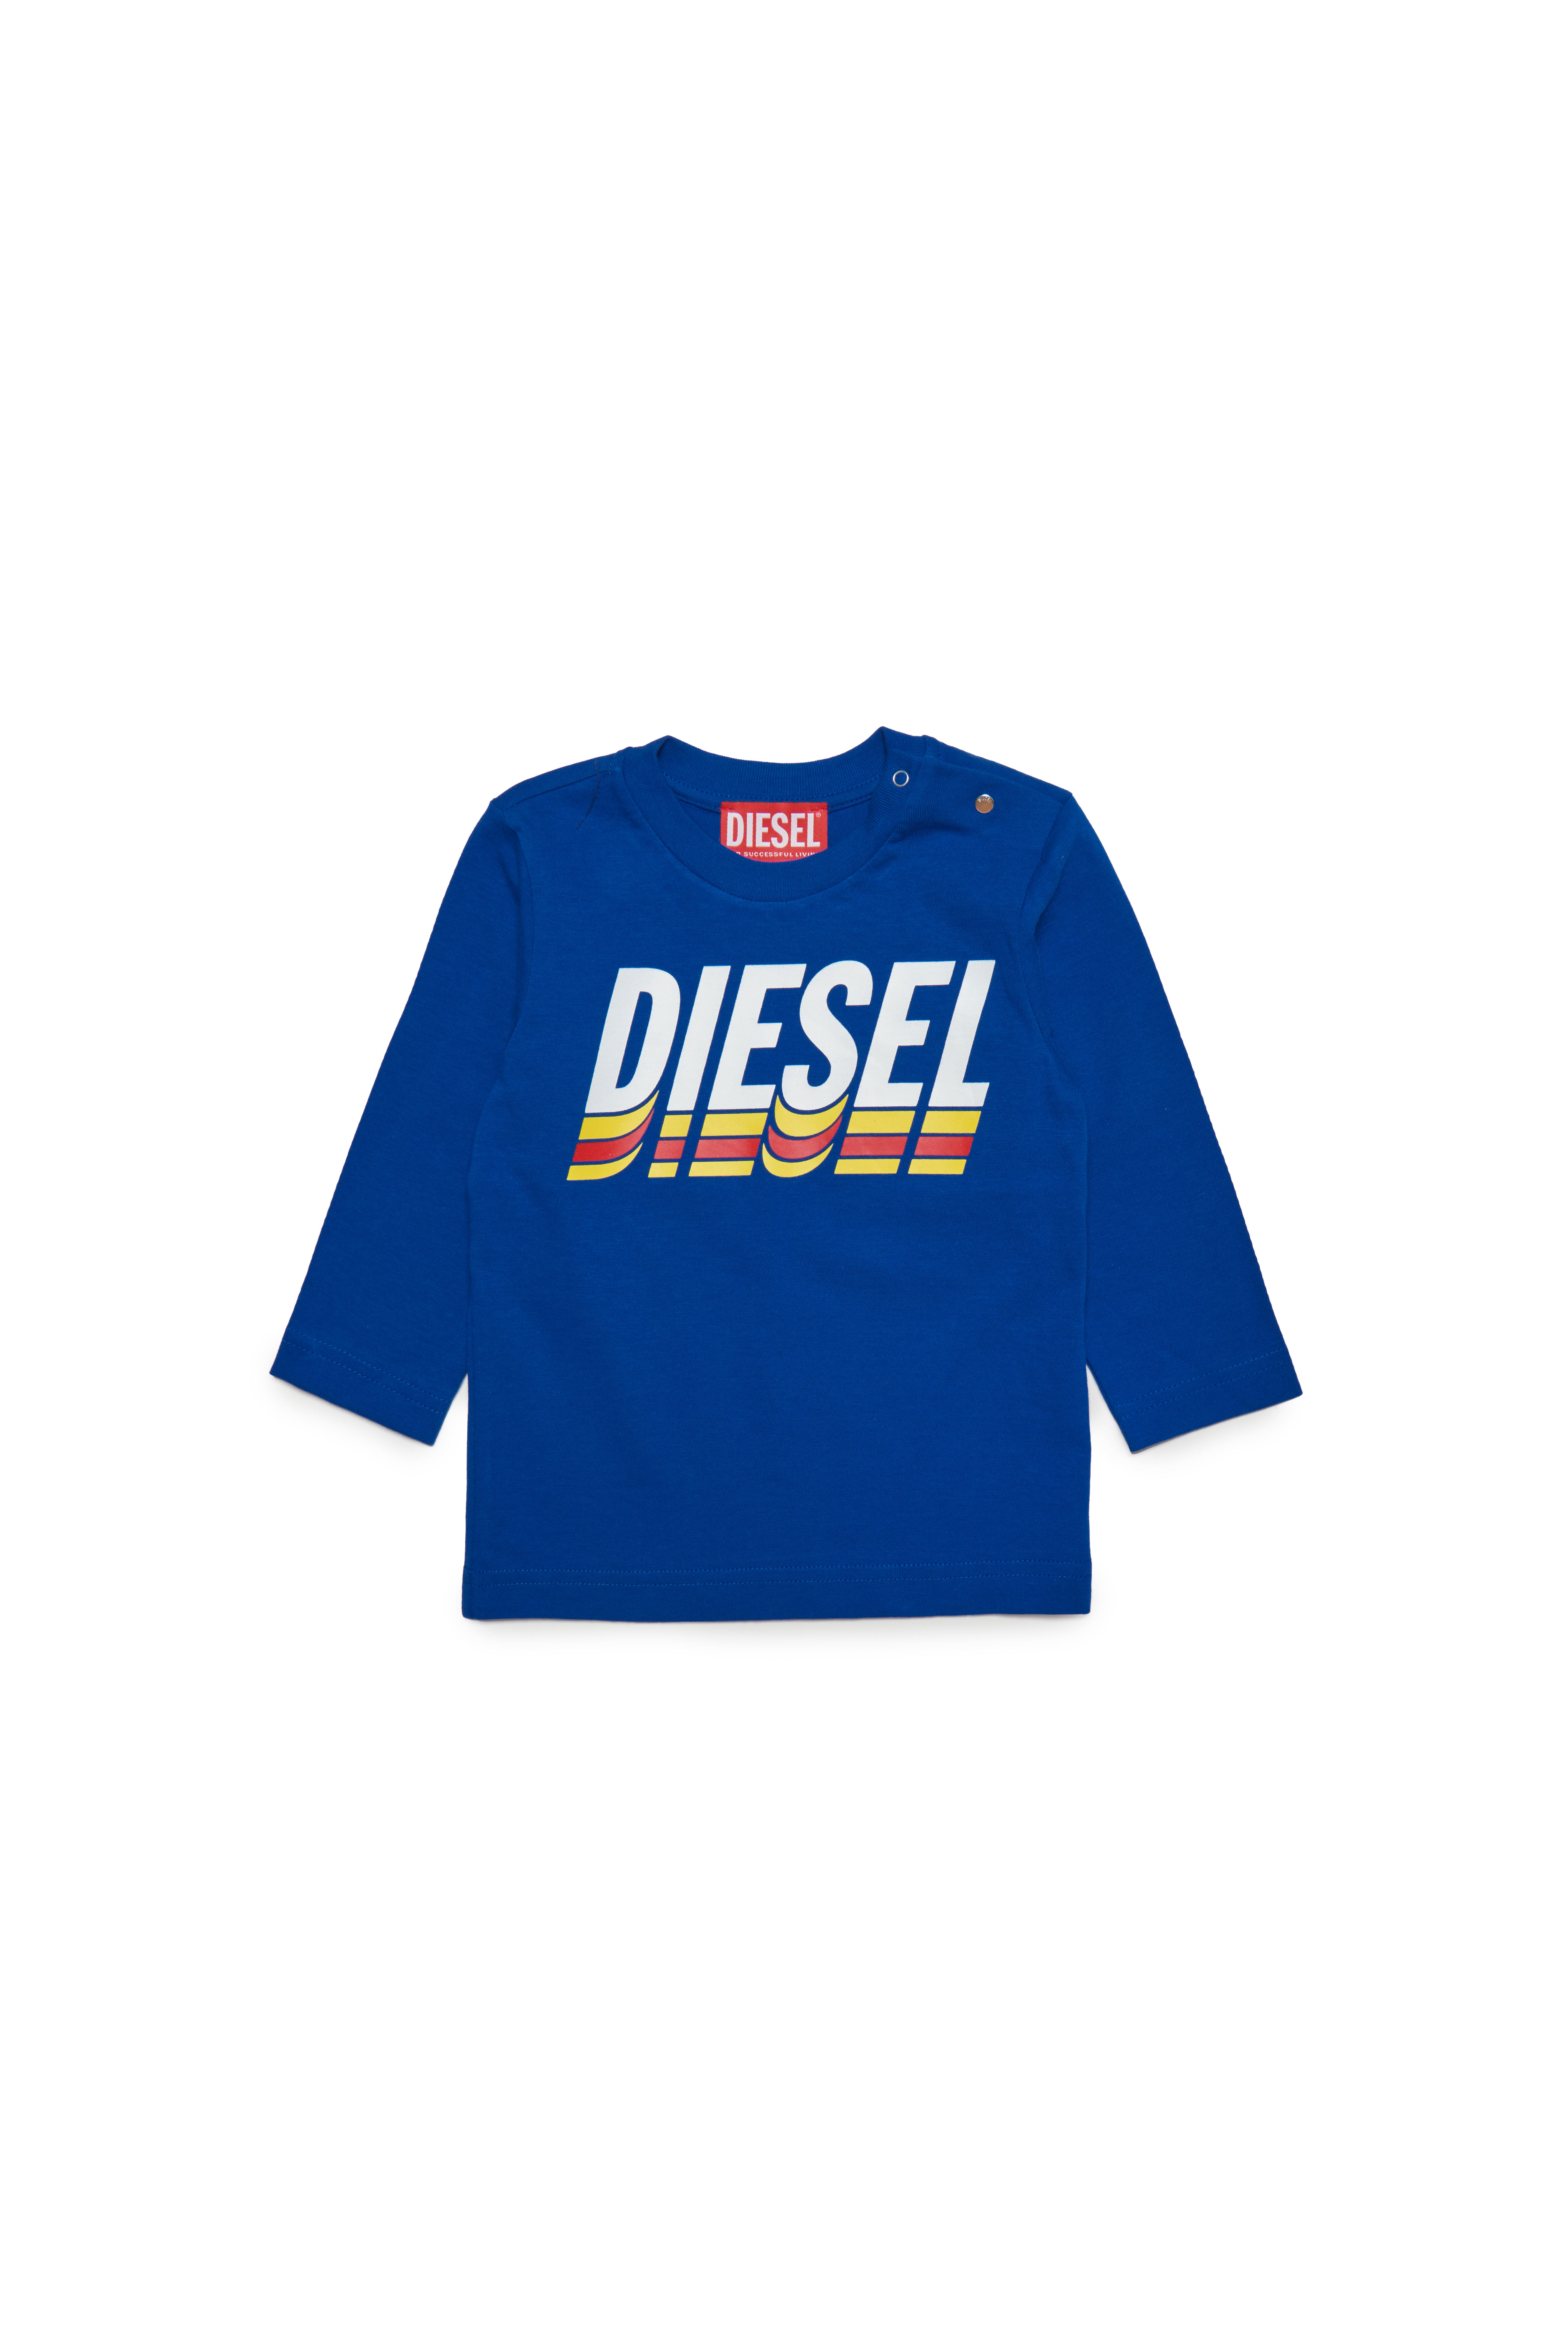 Diesel - TVASELSB, Blau - Image 1